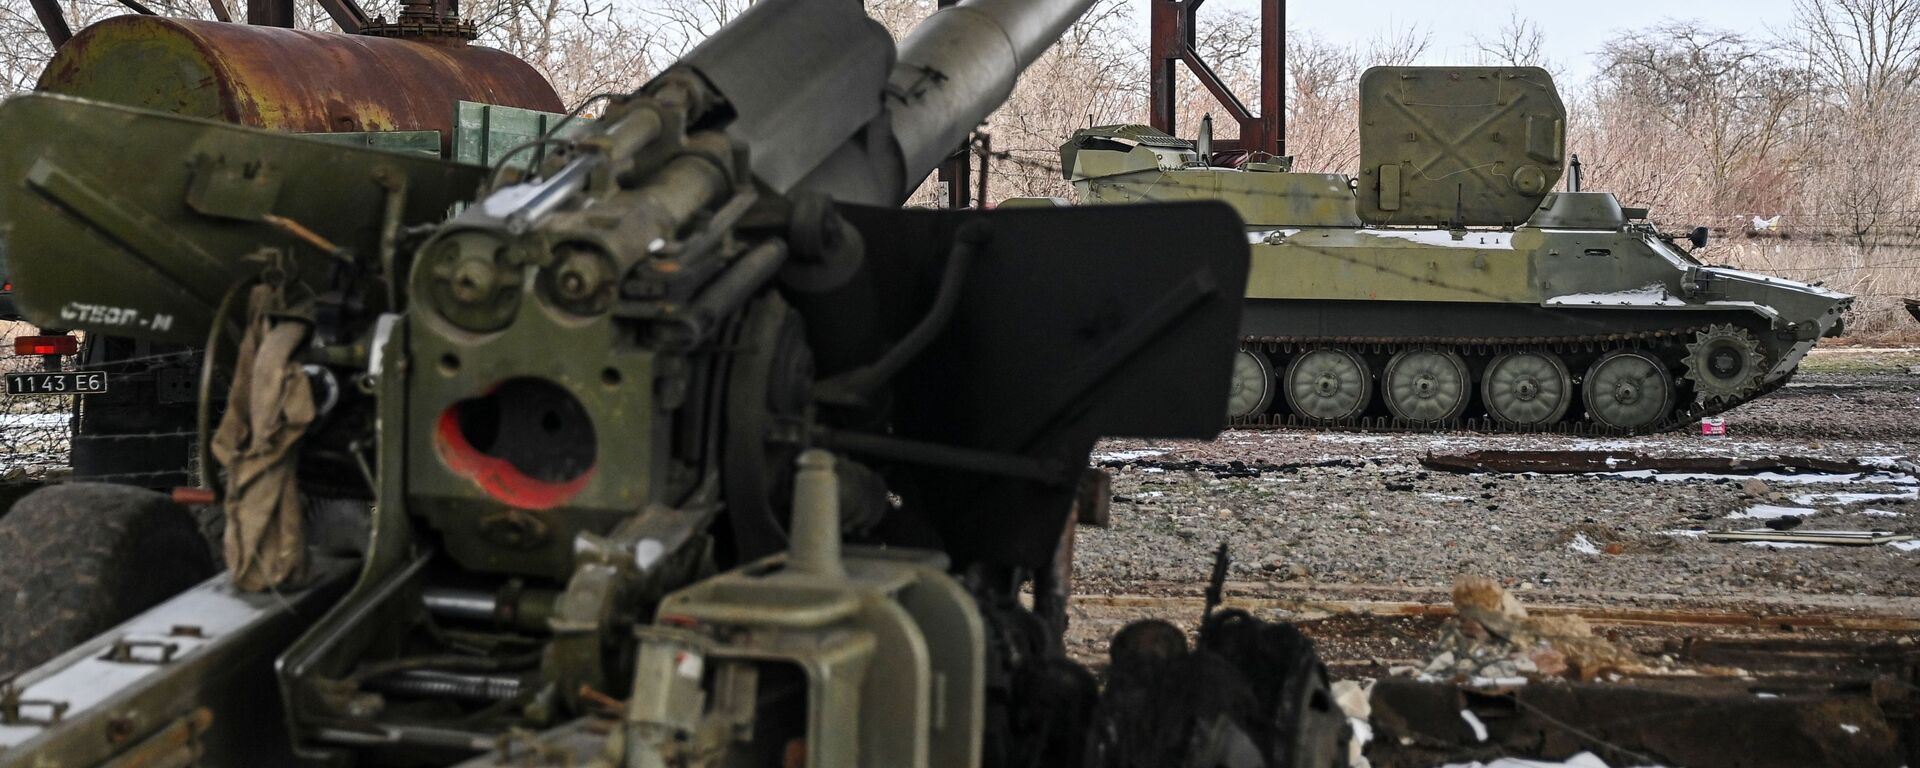 معدات عسكرية من وحدة مدفعية كانت تابعة للقوات المسلحة الأوكرانية في بيرديانسك، أوكرانيا 12 مارس 2022 - سبوتنيك عربي, 1920, 19.05.2022